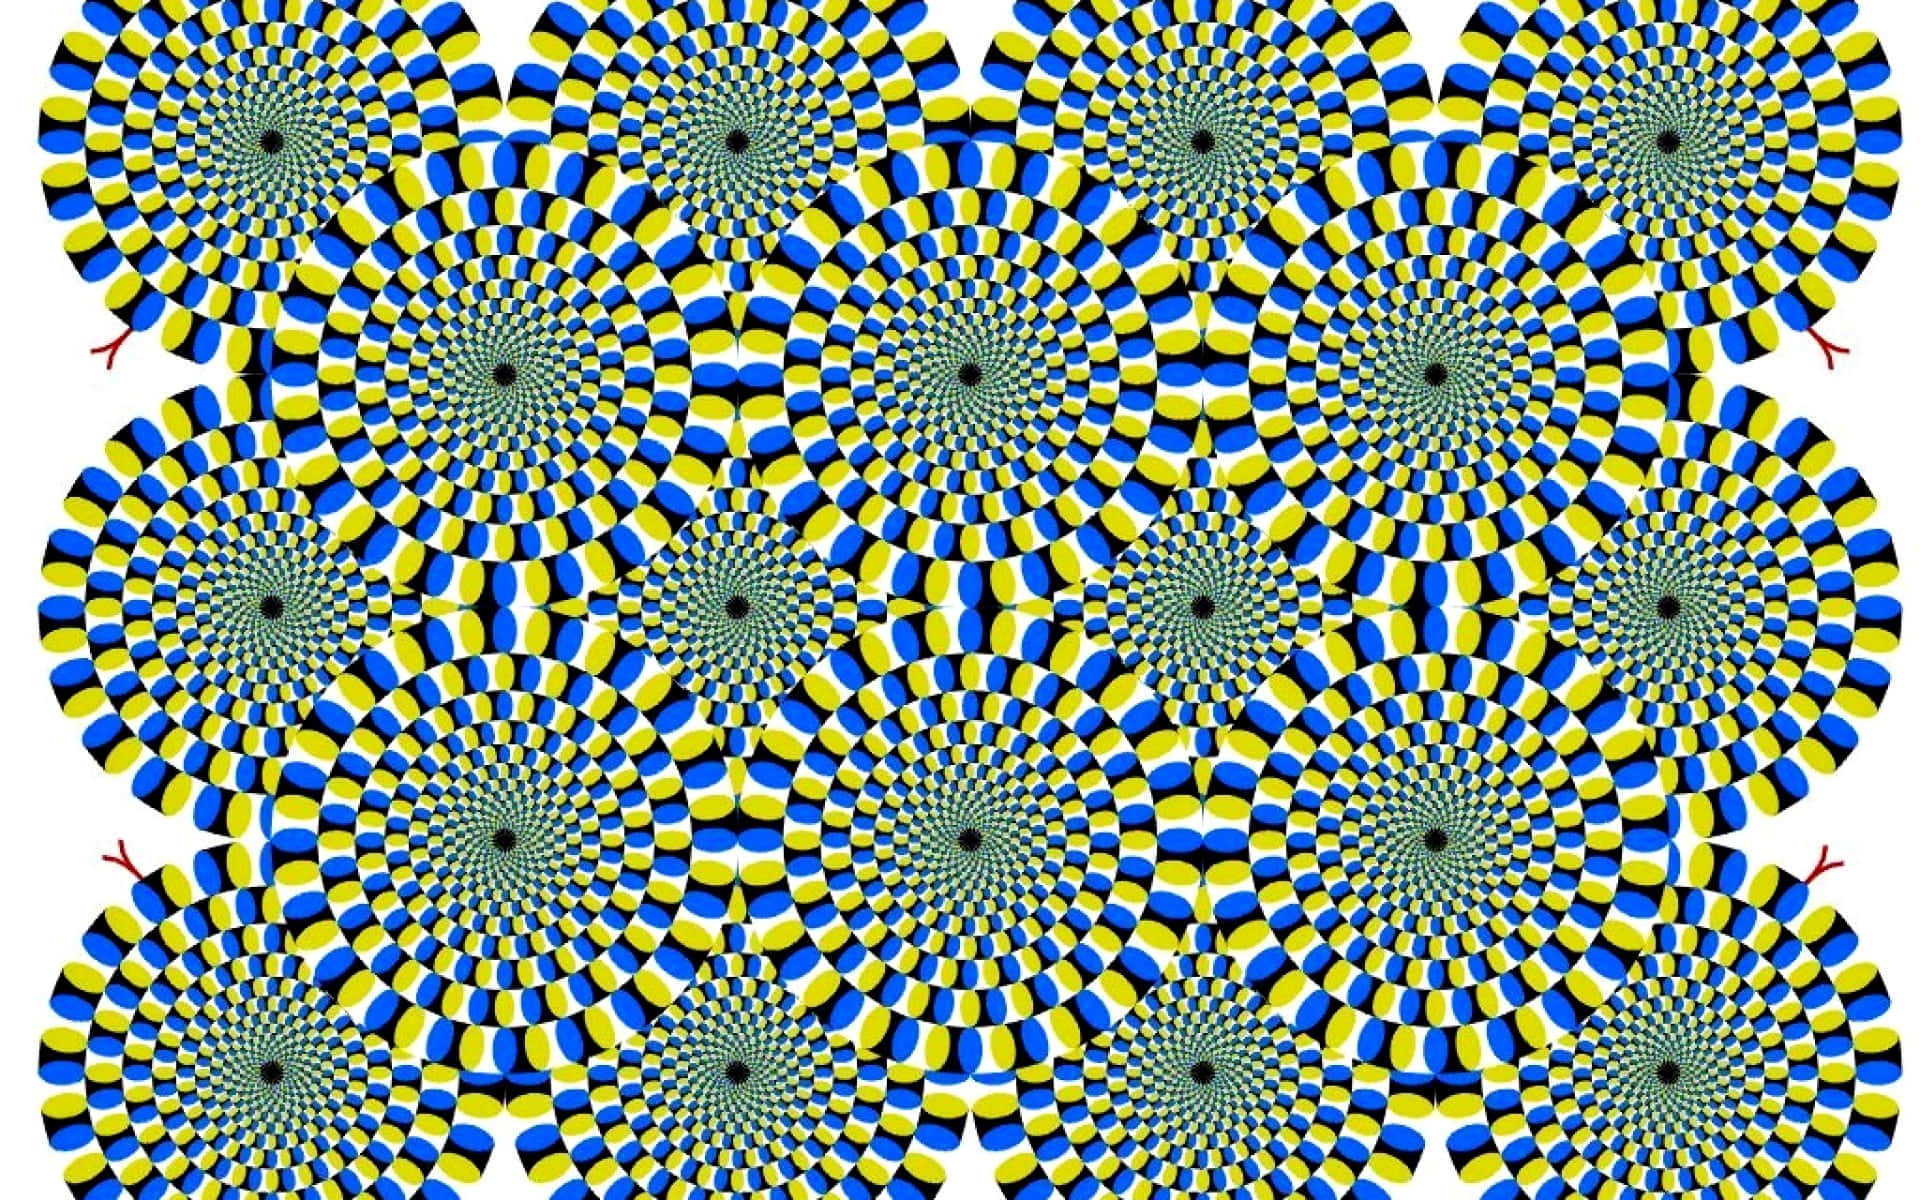 Seje Optiske Illusioner 1920 X 1200 Wallpaper